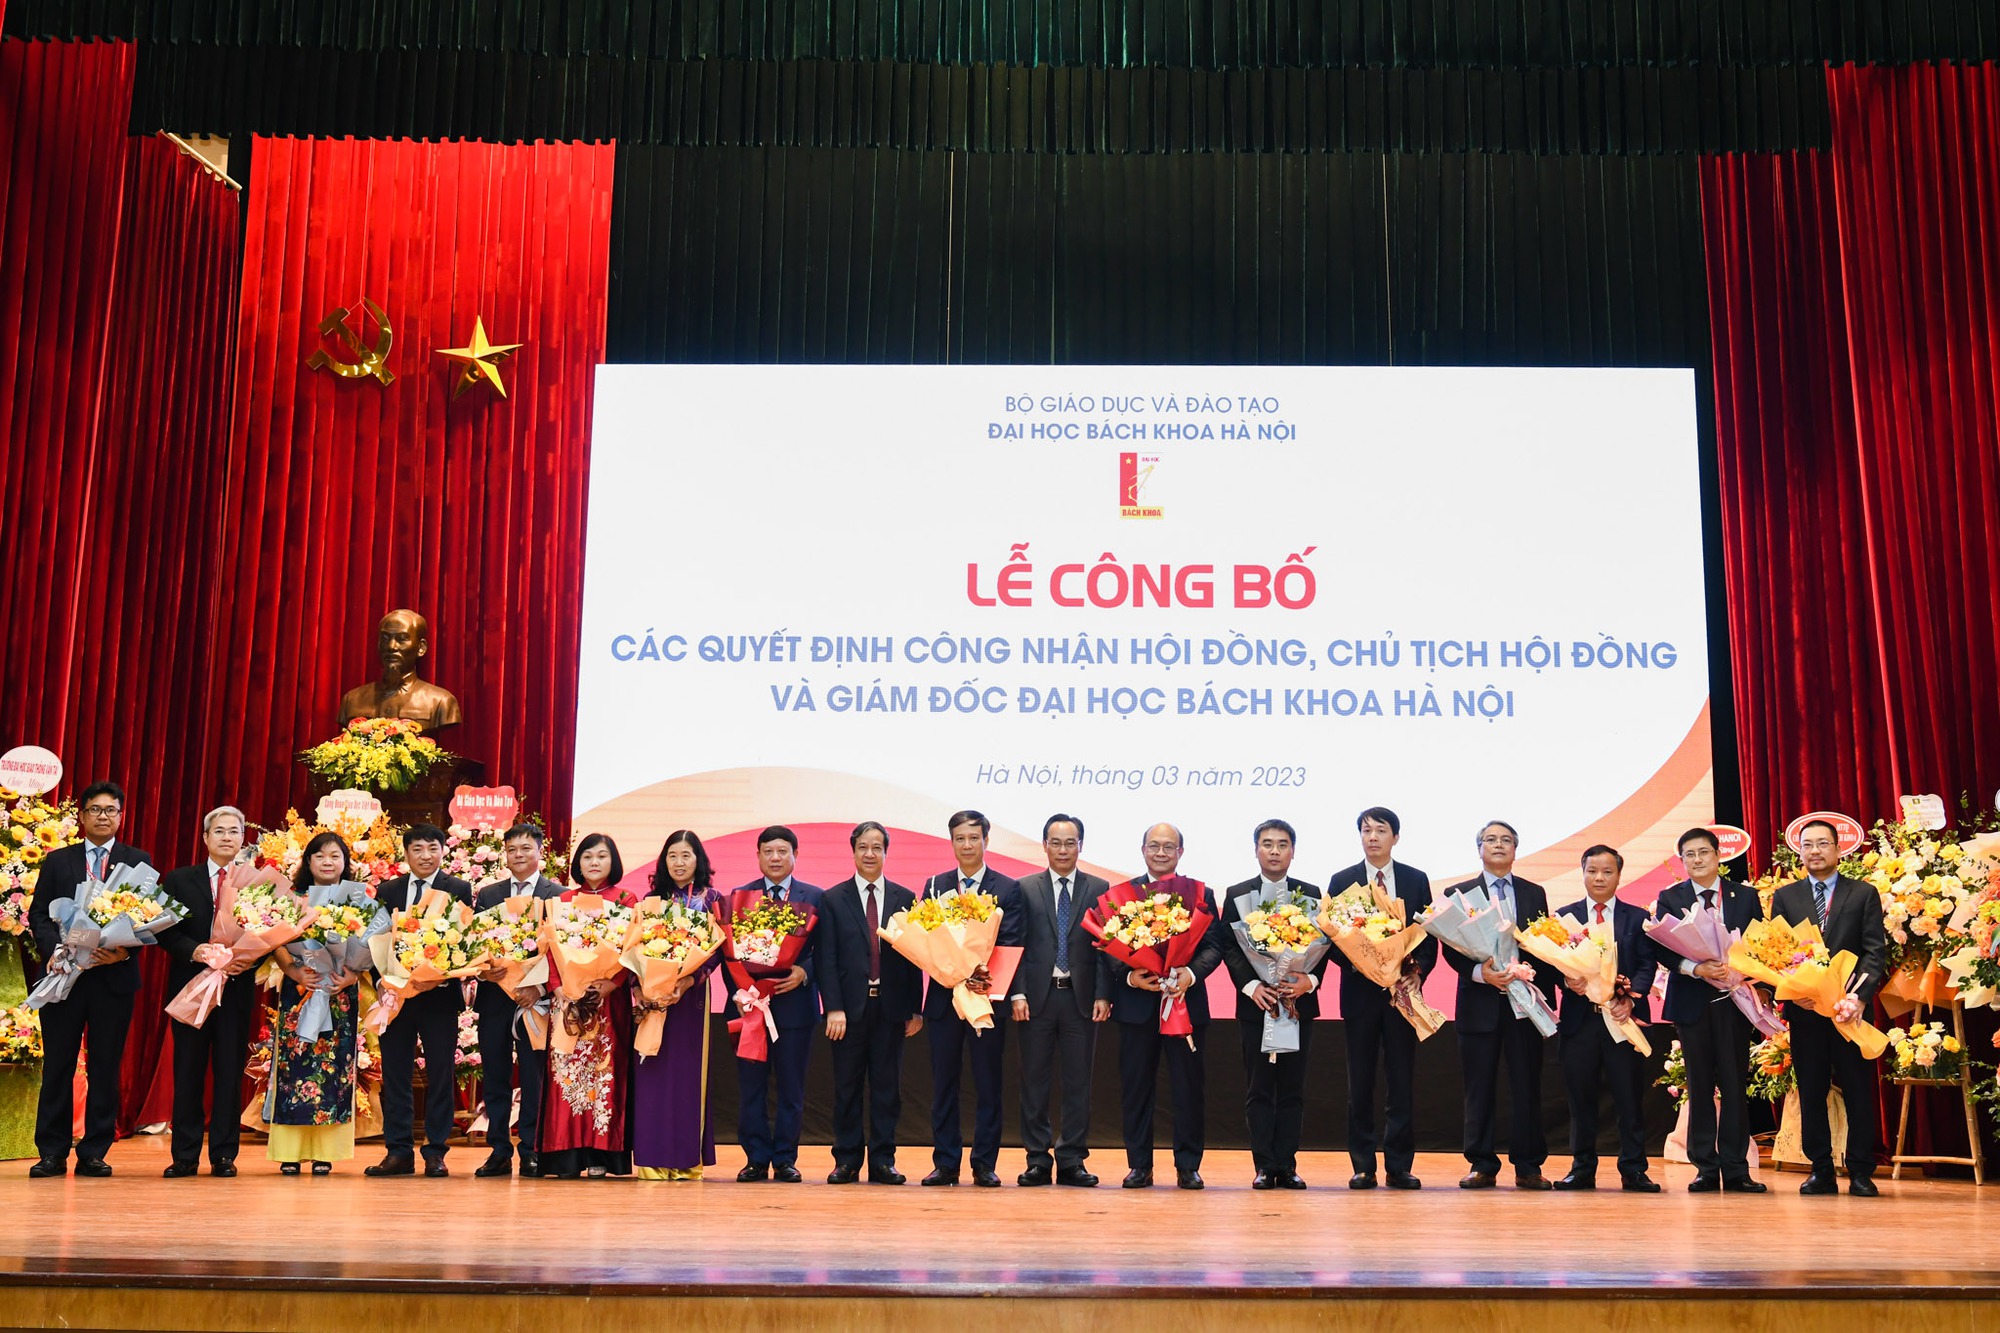 Lộ diện Hội đồng, Chủ tịch Hội đồng và Giám đốc Đại học Bách khoa Hà Nội sau chuyển đổi - Ảnh 2.